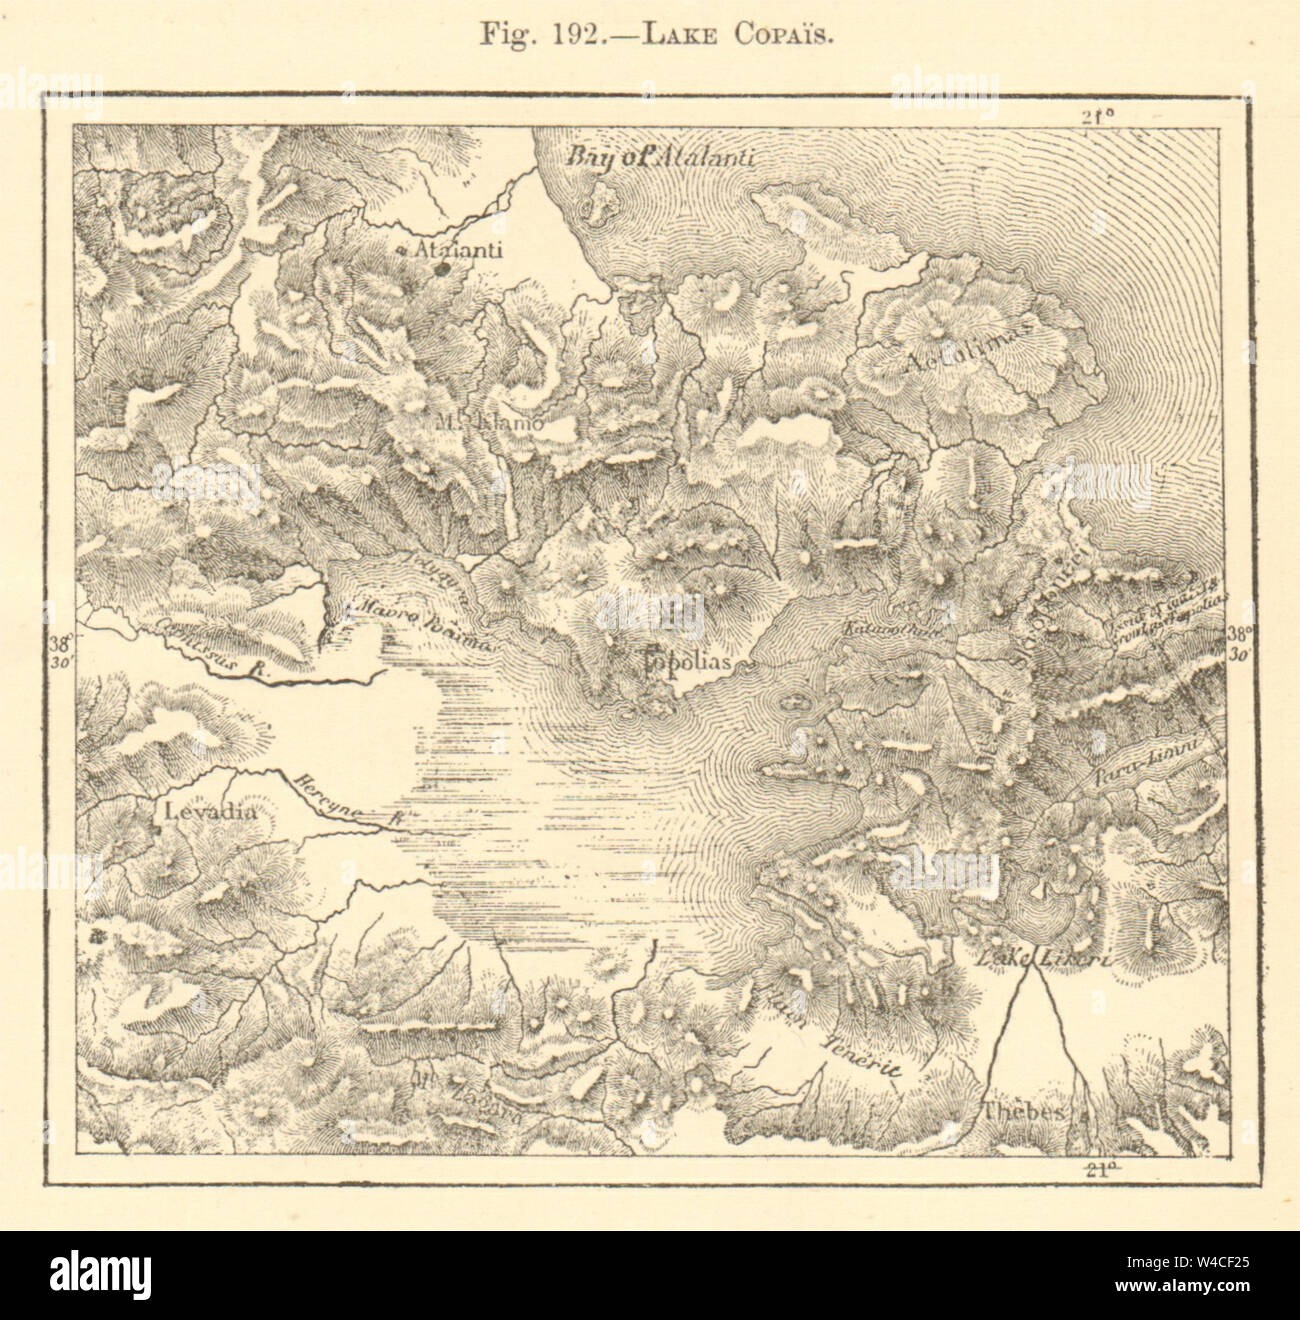 Lake Copais. Greece. Kopais. Sketch map 1886 old antique plan chart Stock Photo